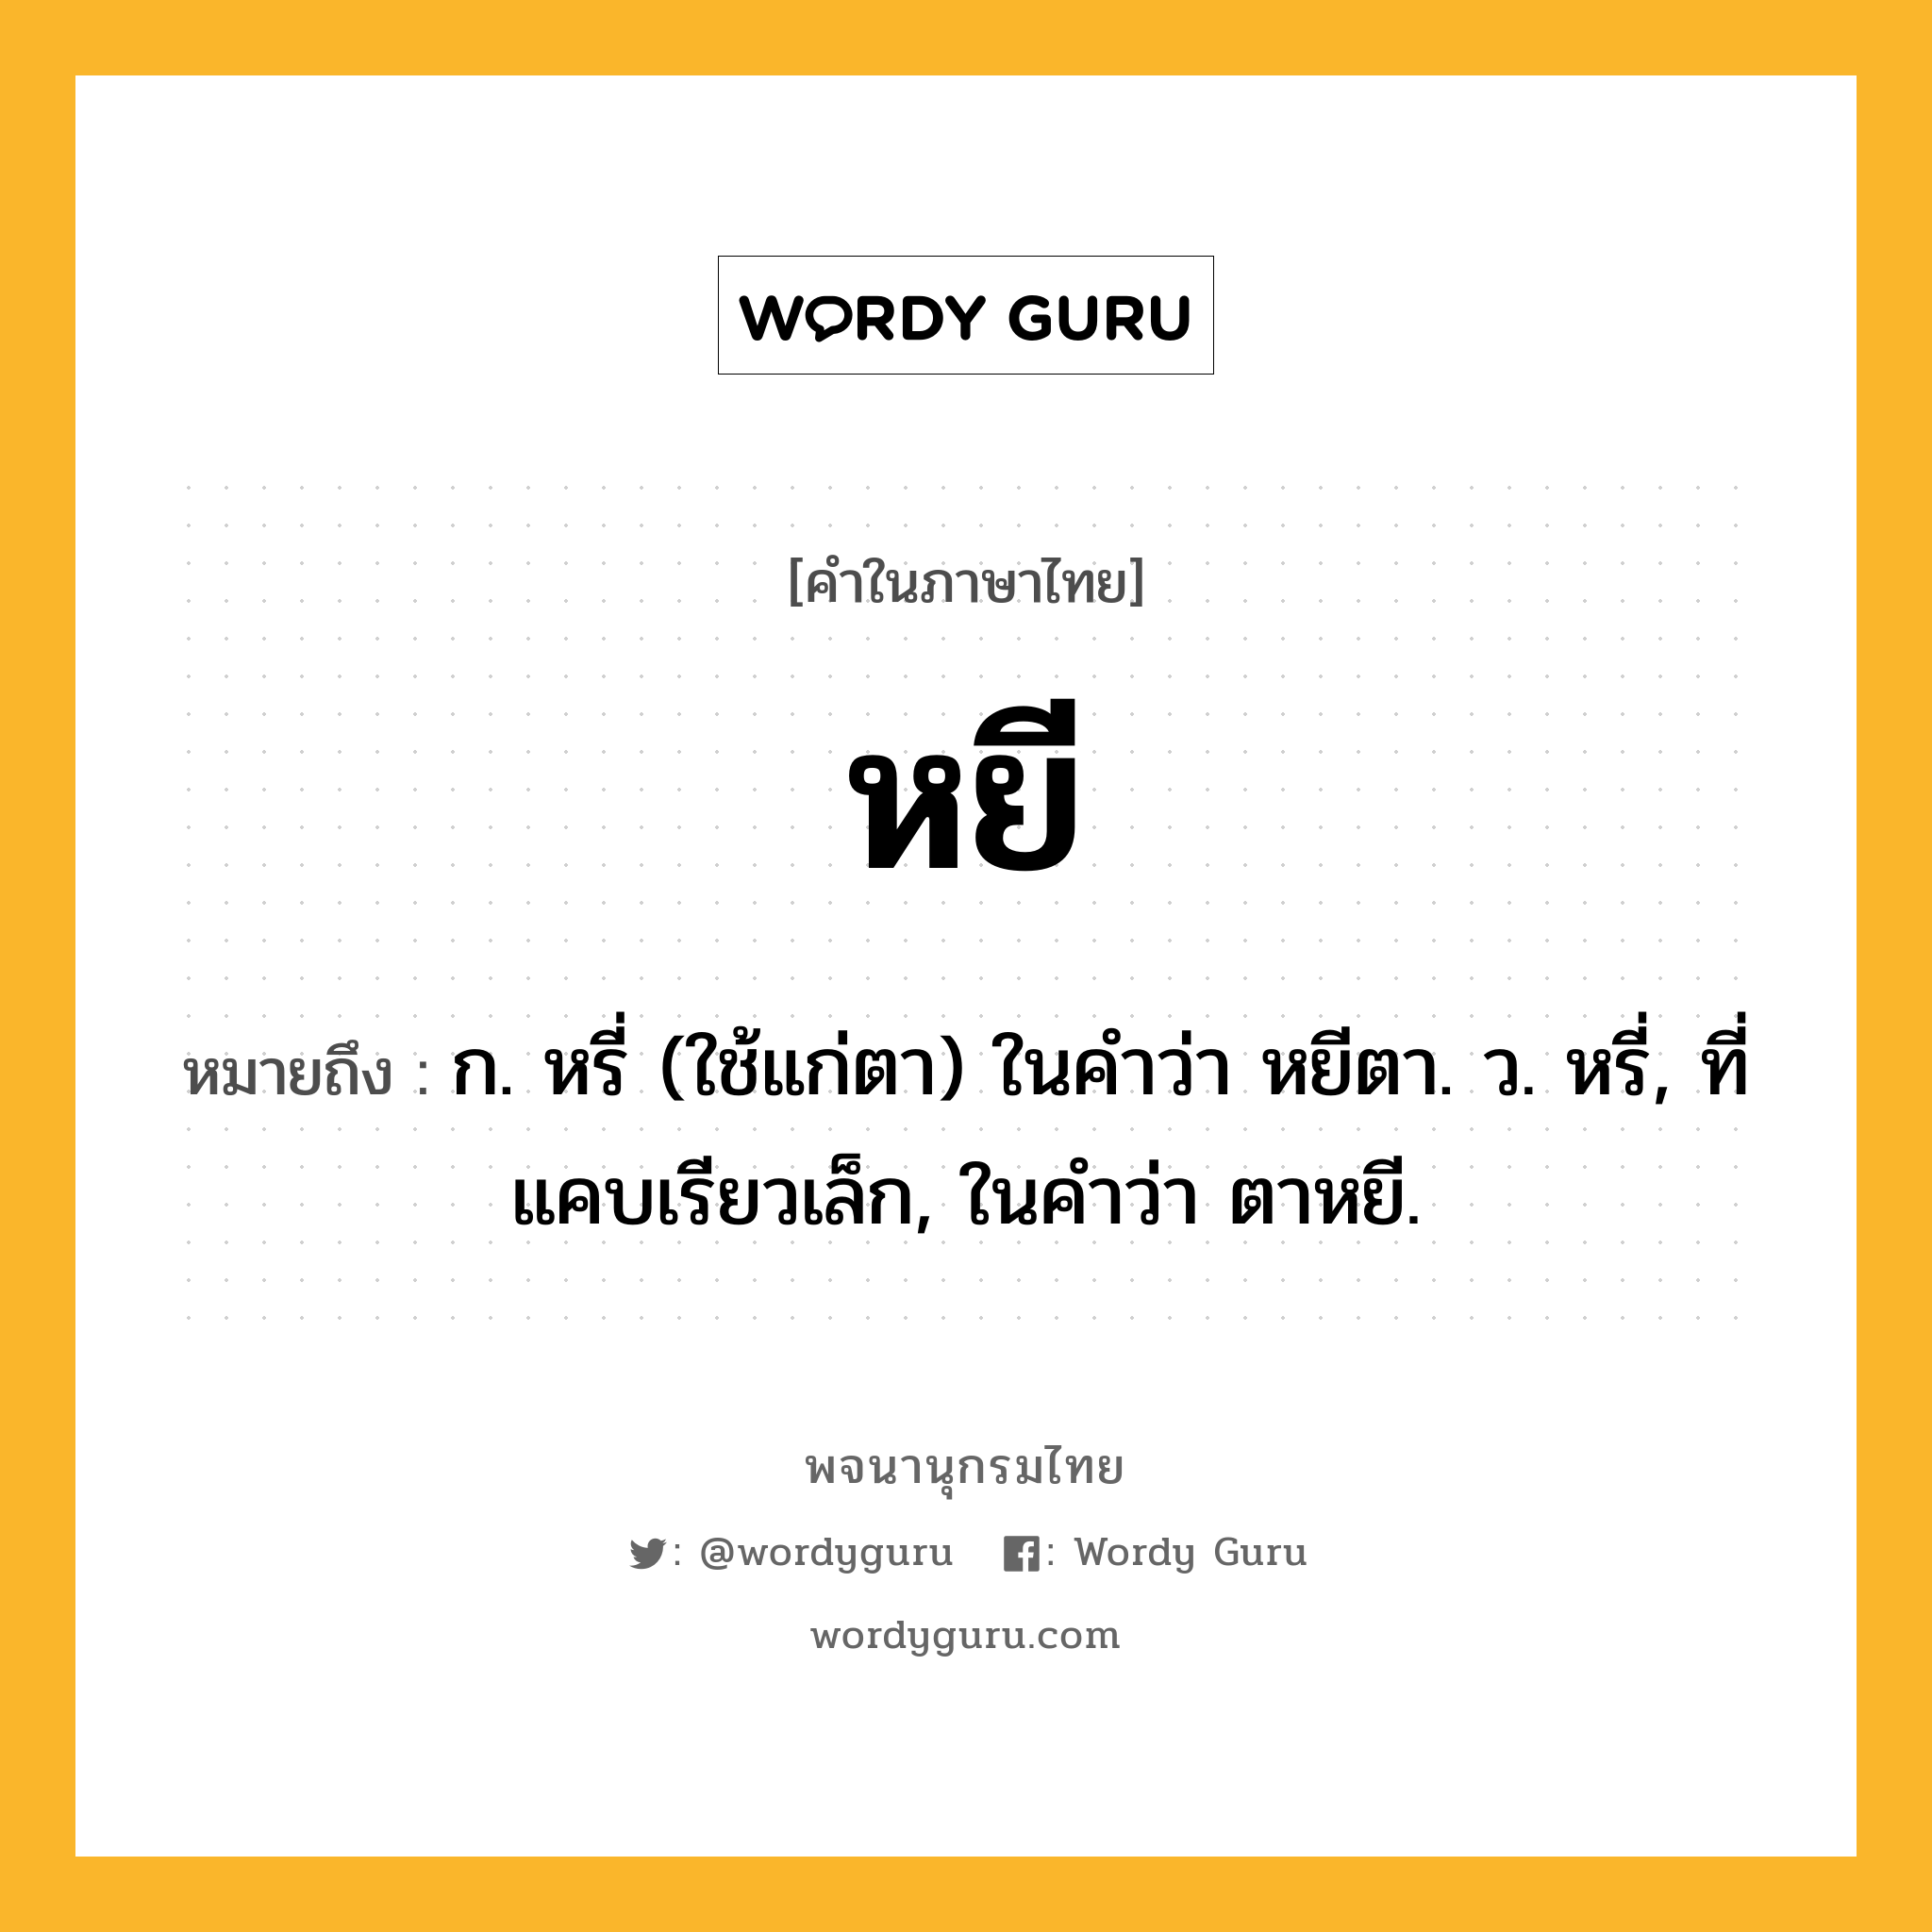 หยี หมายถึงอะไร?, คำในภาษาไทย หยี หมายถึง ก. หรี่ (ใช้แก่ตา) ในคำว่า หยีตา. ว. หรี่, ที่แคบเรียวเล็ก, ในคำว่า ตาหยี.